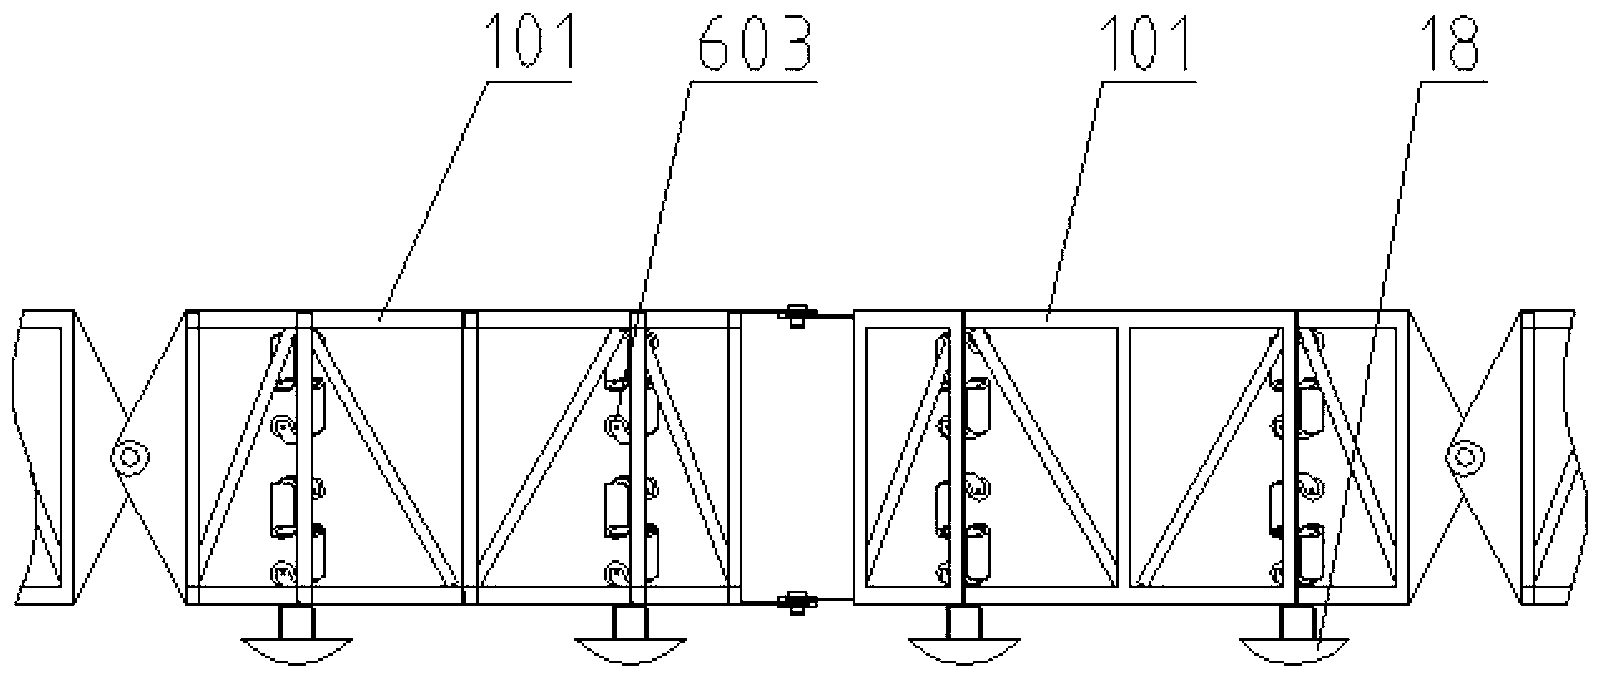 Movable type tubular belt conveyor